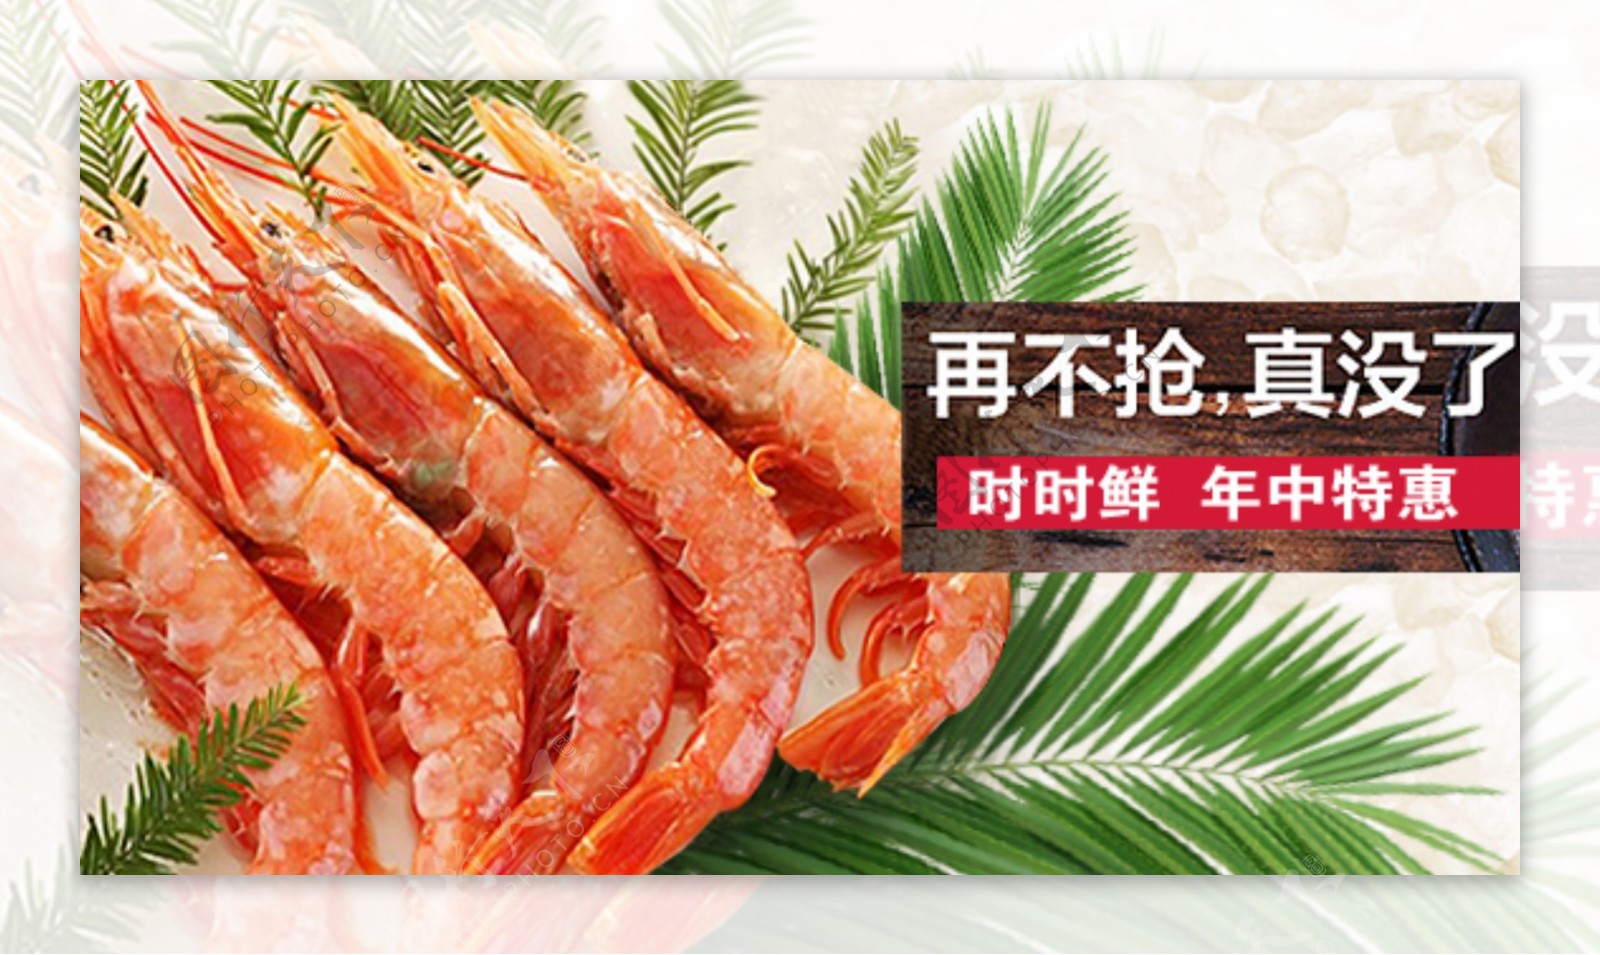 鲜虾海鲜创意广告